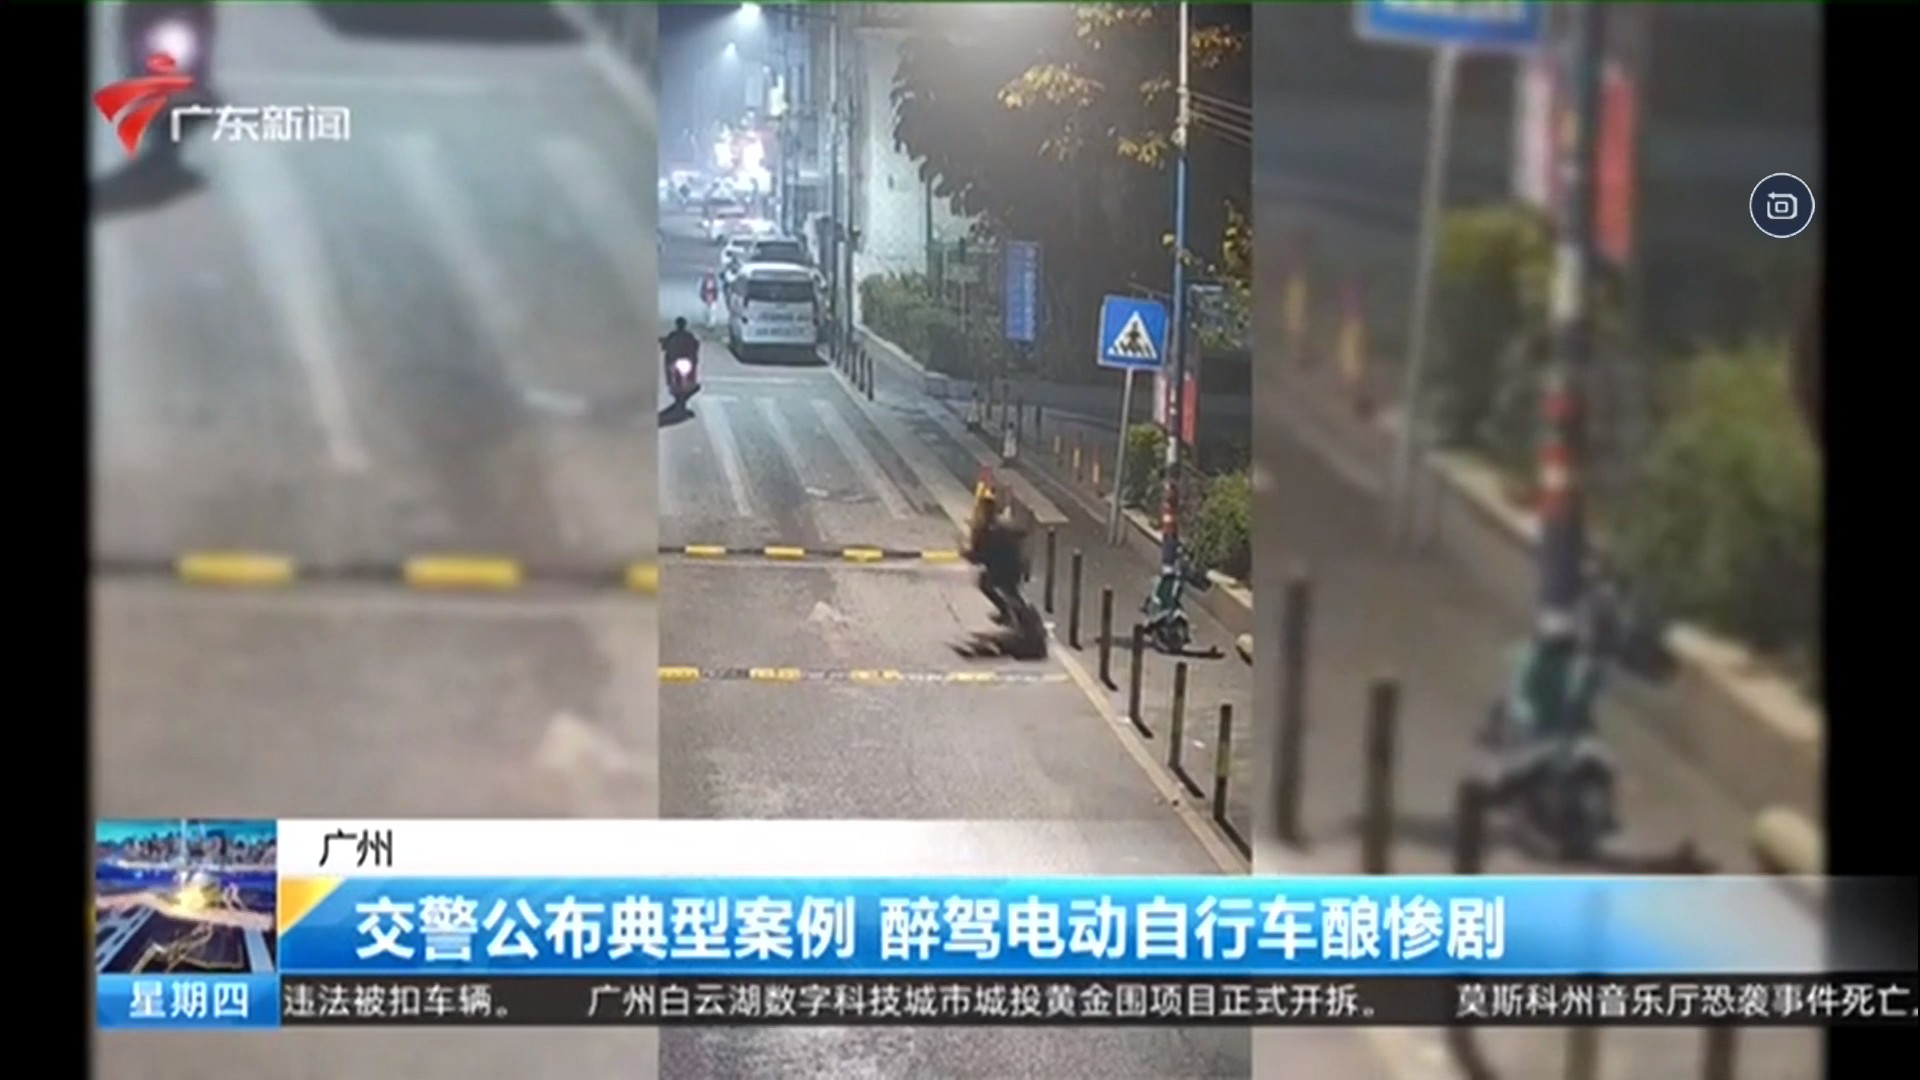 广东新闻频道 今日焦点 【广州】交警公布典型案例 醉驾电动自行车酿惨剧